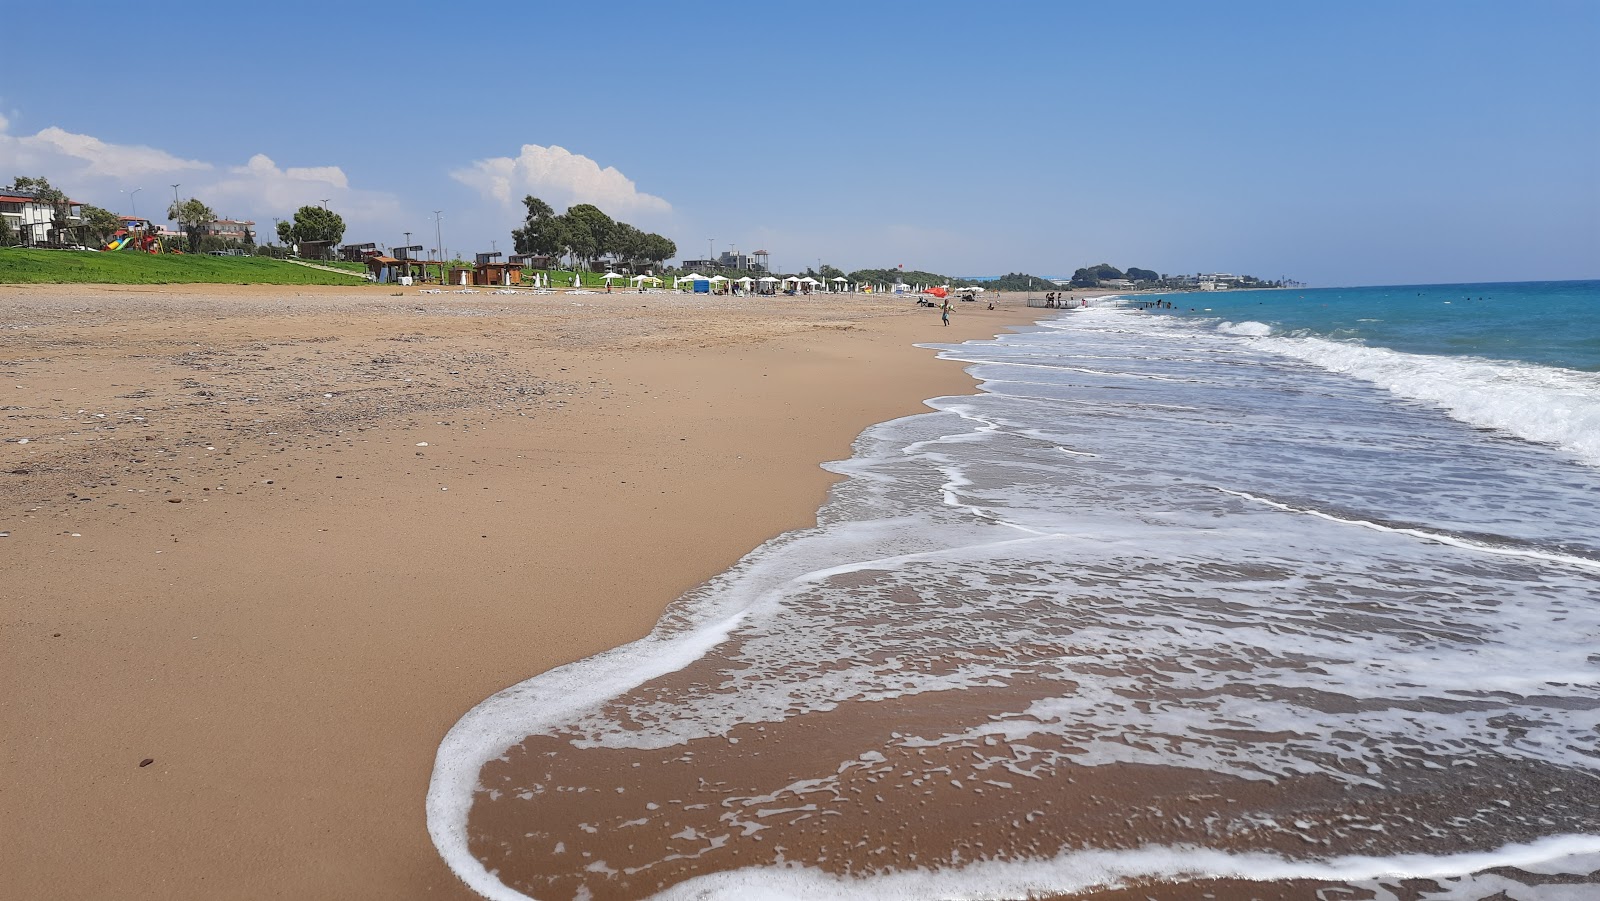 Fotografie cu Kizilot Public beach cu o suprafață de nisip maro